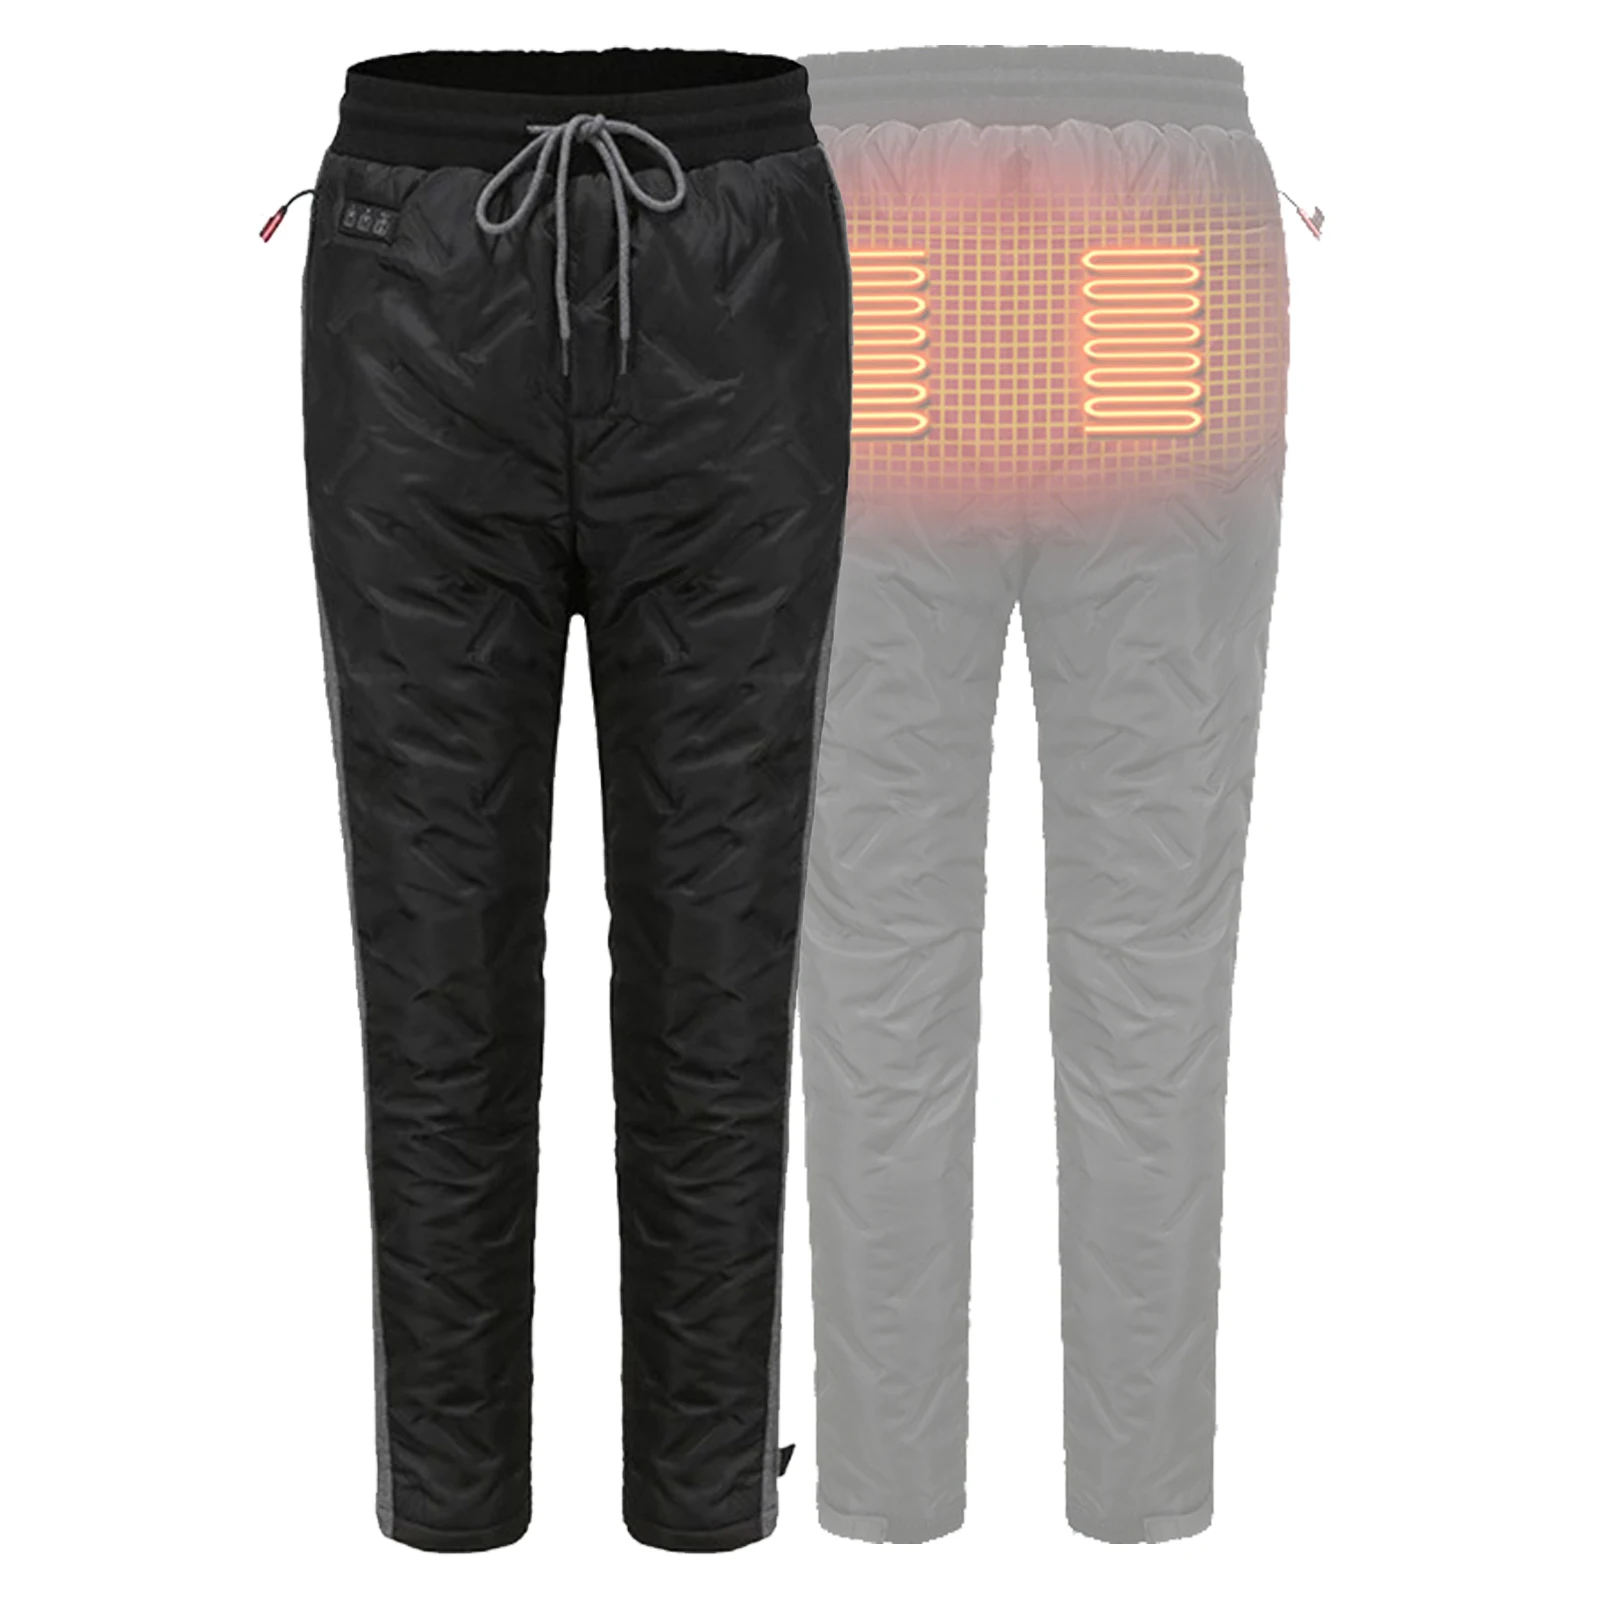 Pantalones térmicos con Control de temperatura para ciclismo, pantalones  térmicos con calefacción eléctrica de 8 zonas para invierno, para acampar